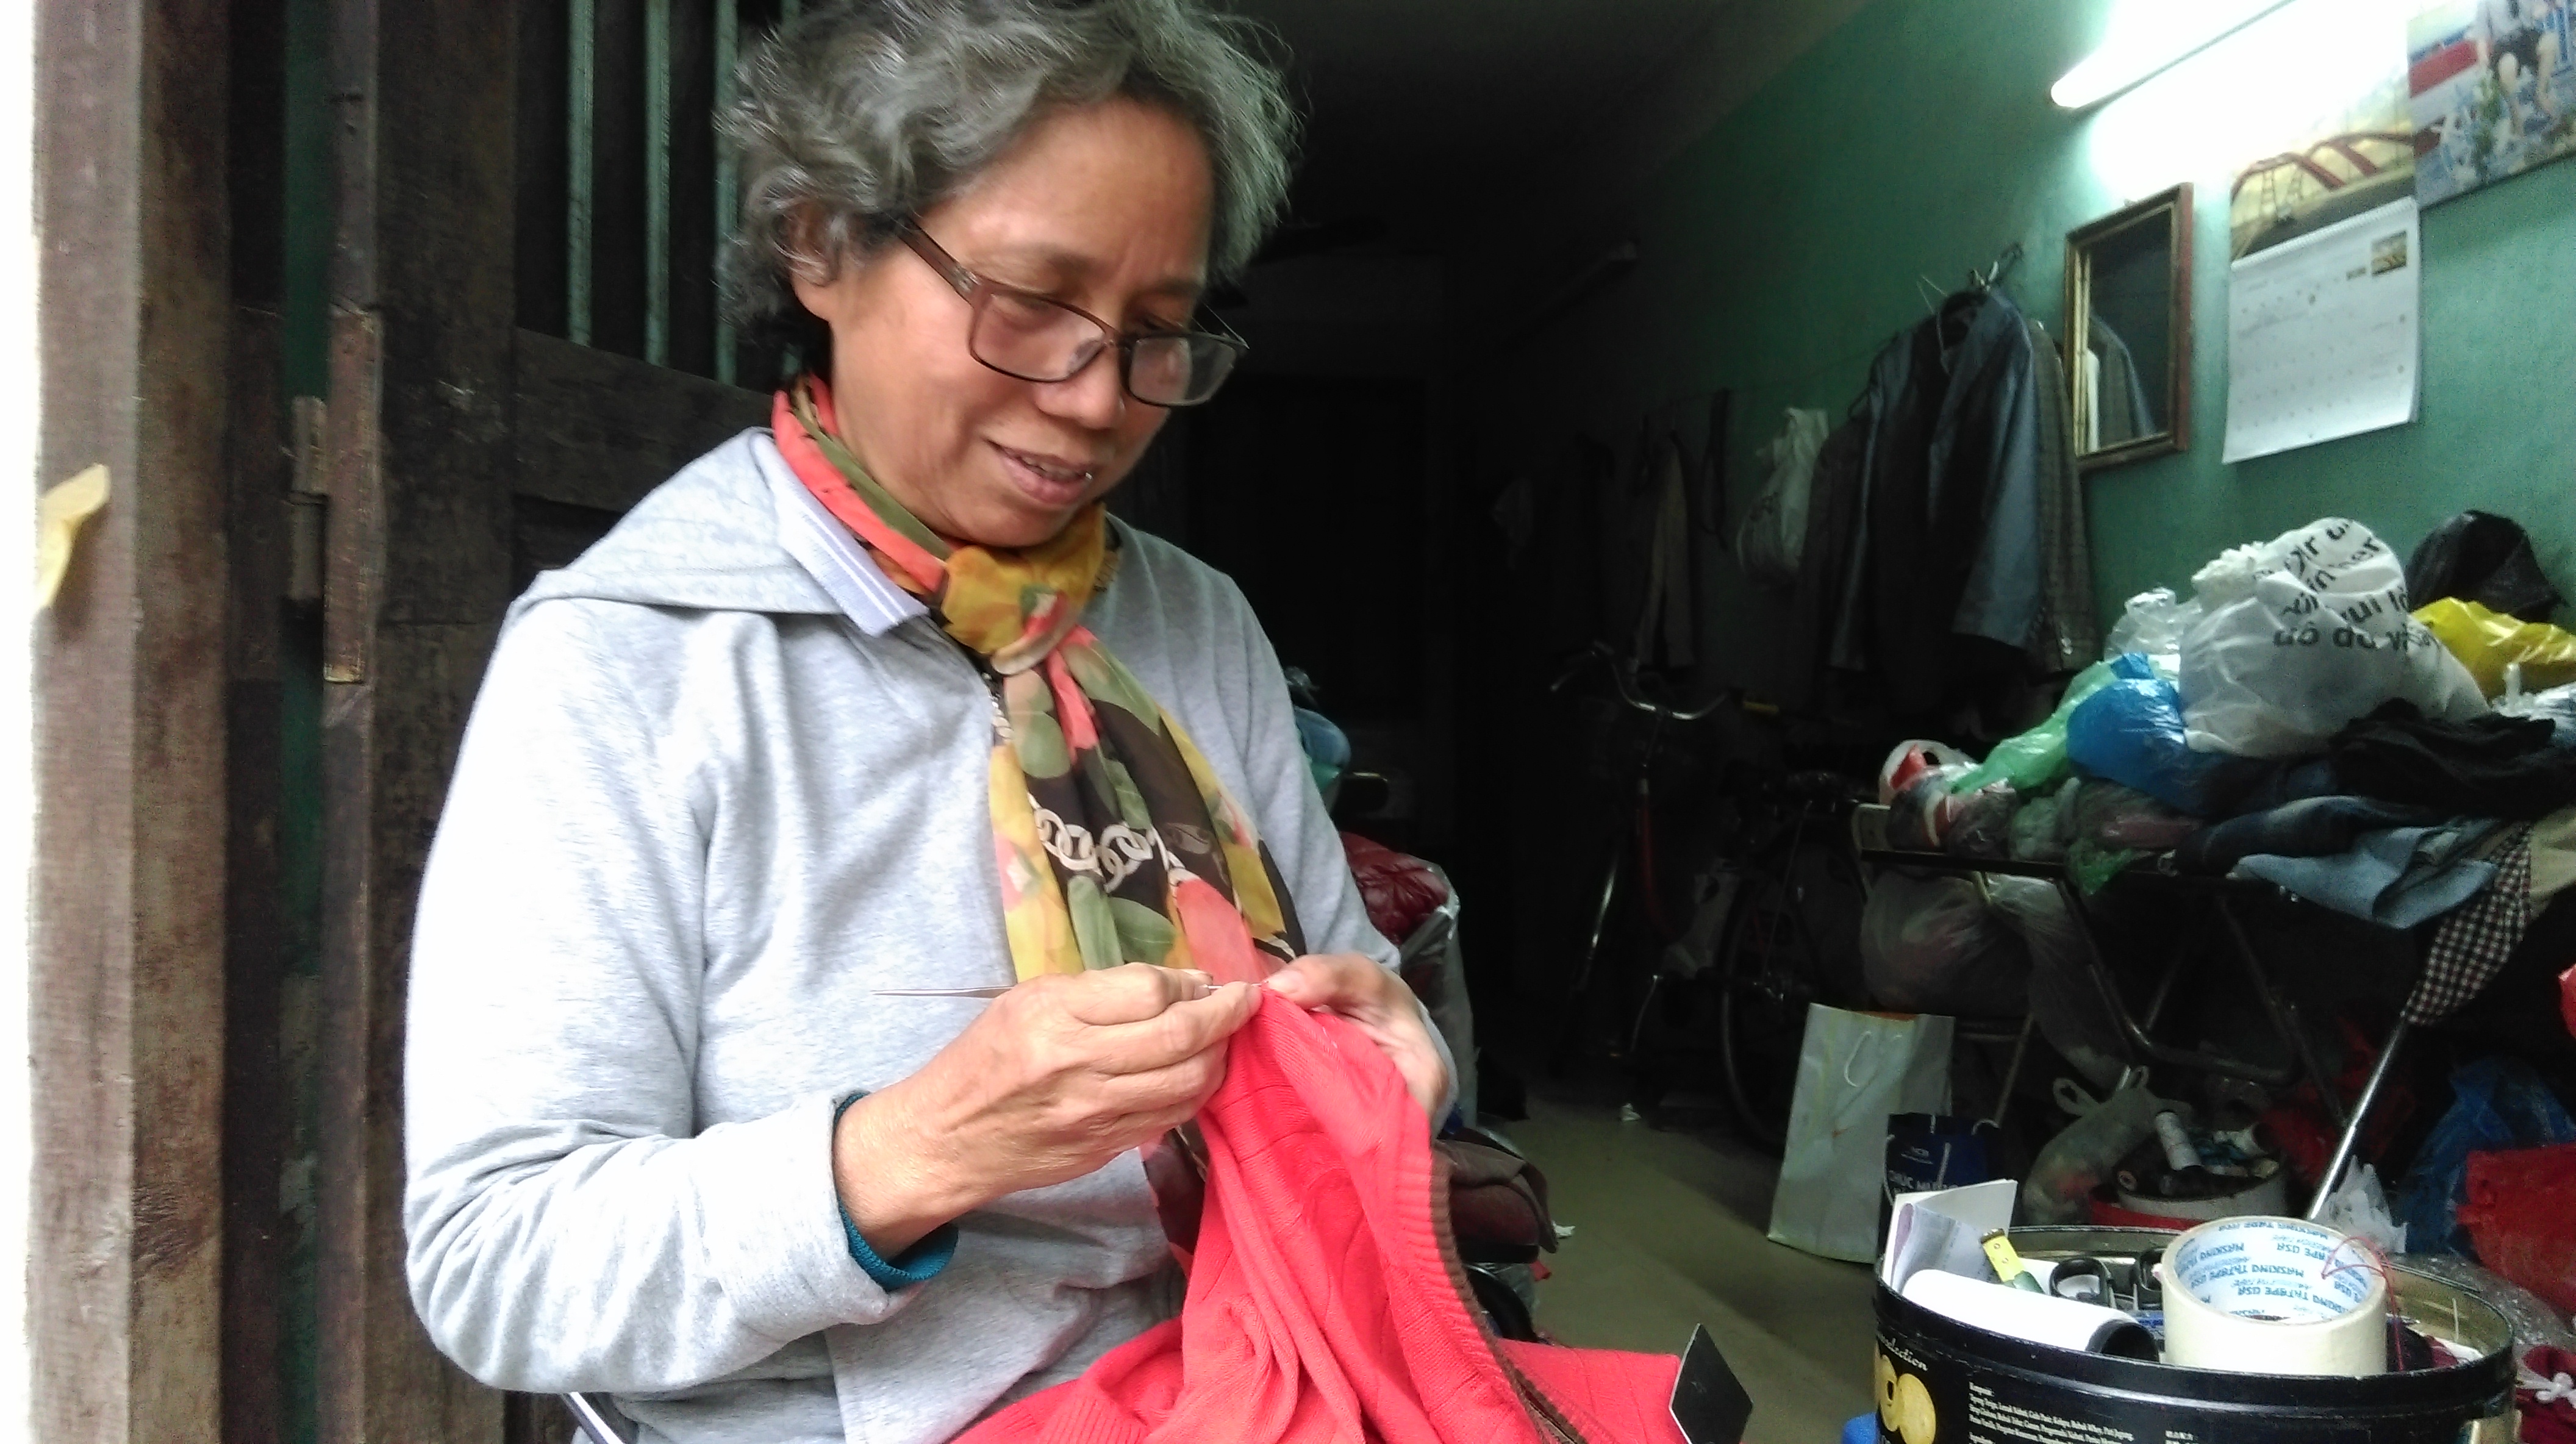 Câu chuyện về gia đình làm nghề mạng, sang sợi quần áo cuối cùng ở Hà Nội. (15/01/2016)